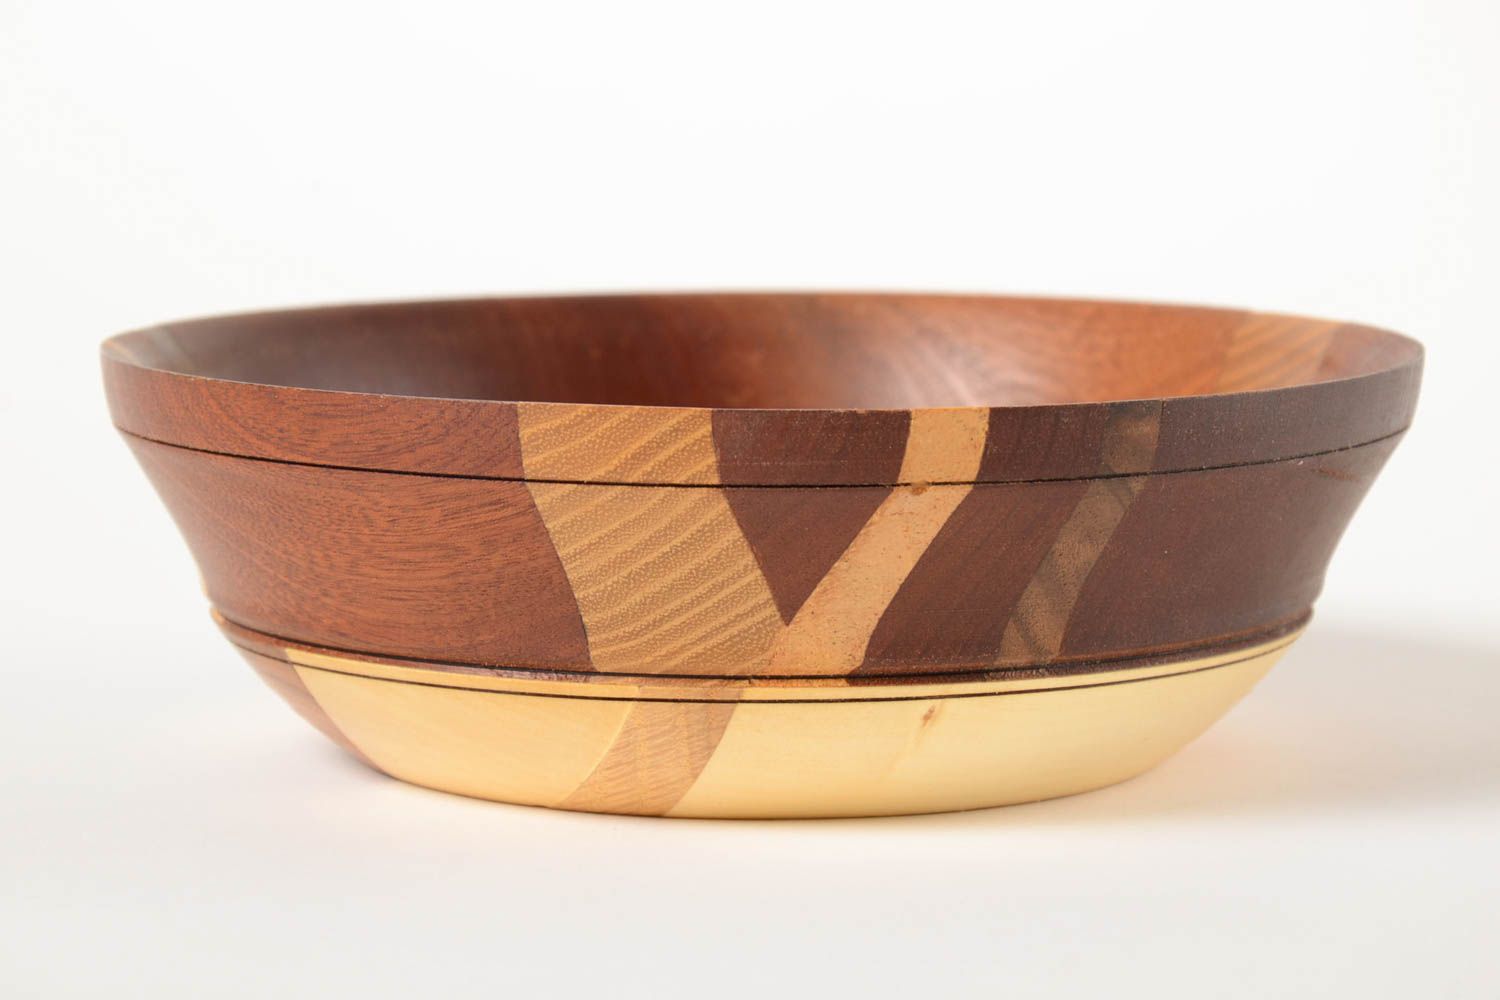 Beautiful handmade wooden bowl kitchen supplies kitchen design gift ideas photo 2